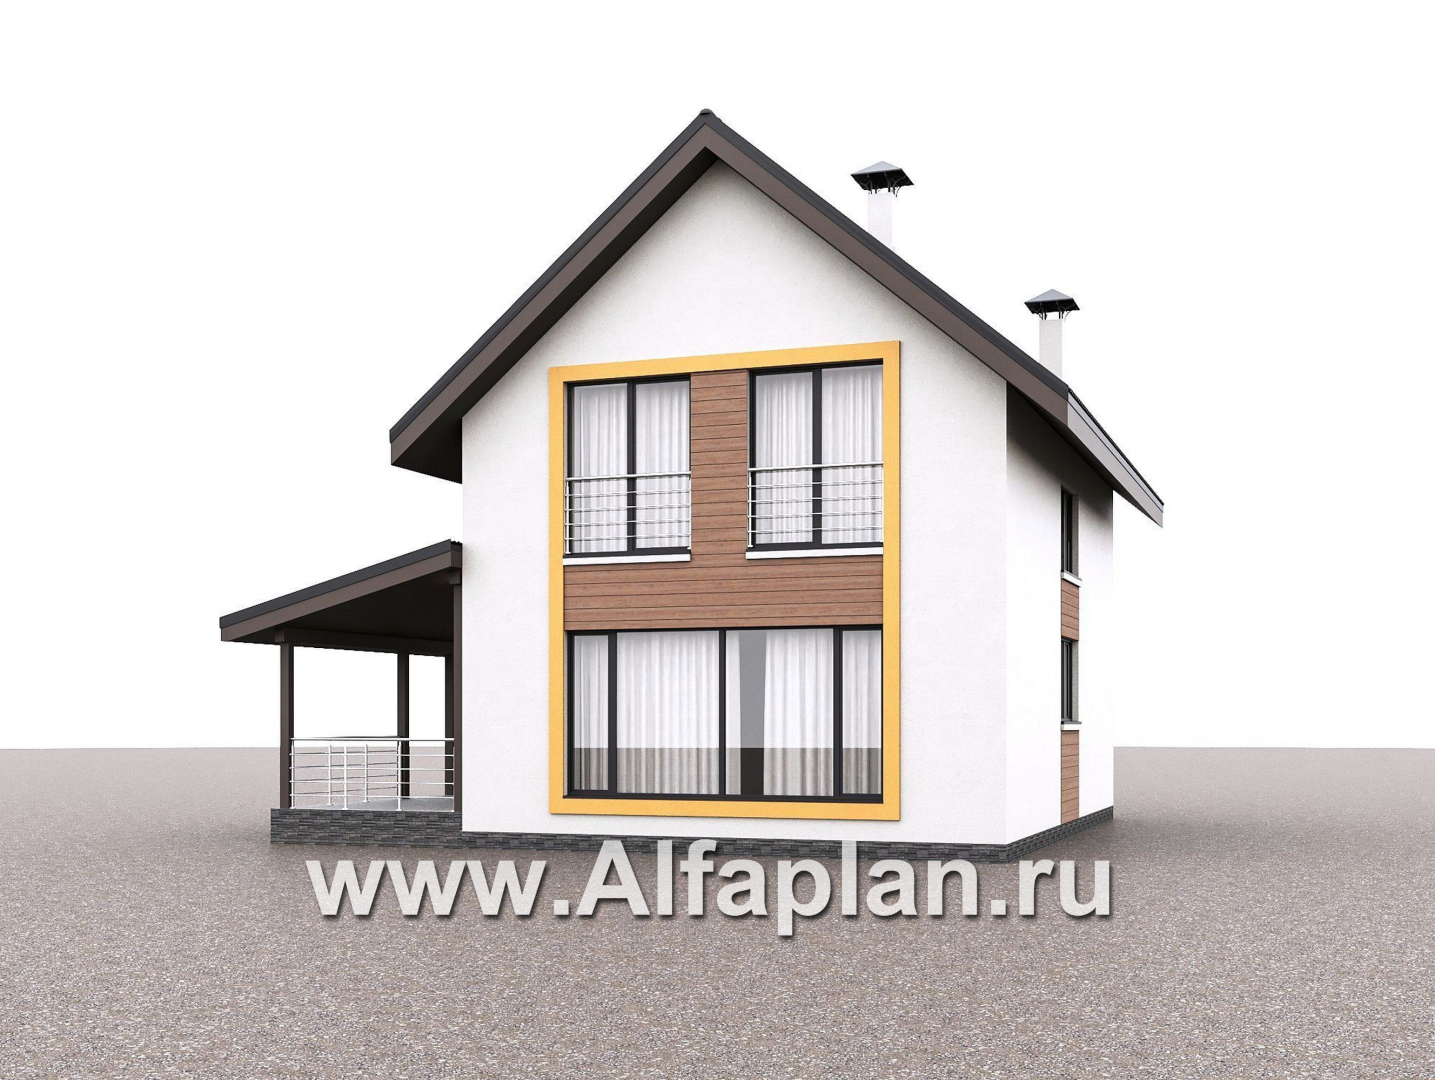 «Викинг» - проект дома, 2 этажа, с сауной и с террасой сбоку, в скандинавском стиле - дизайн дома №3